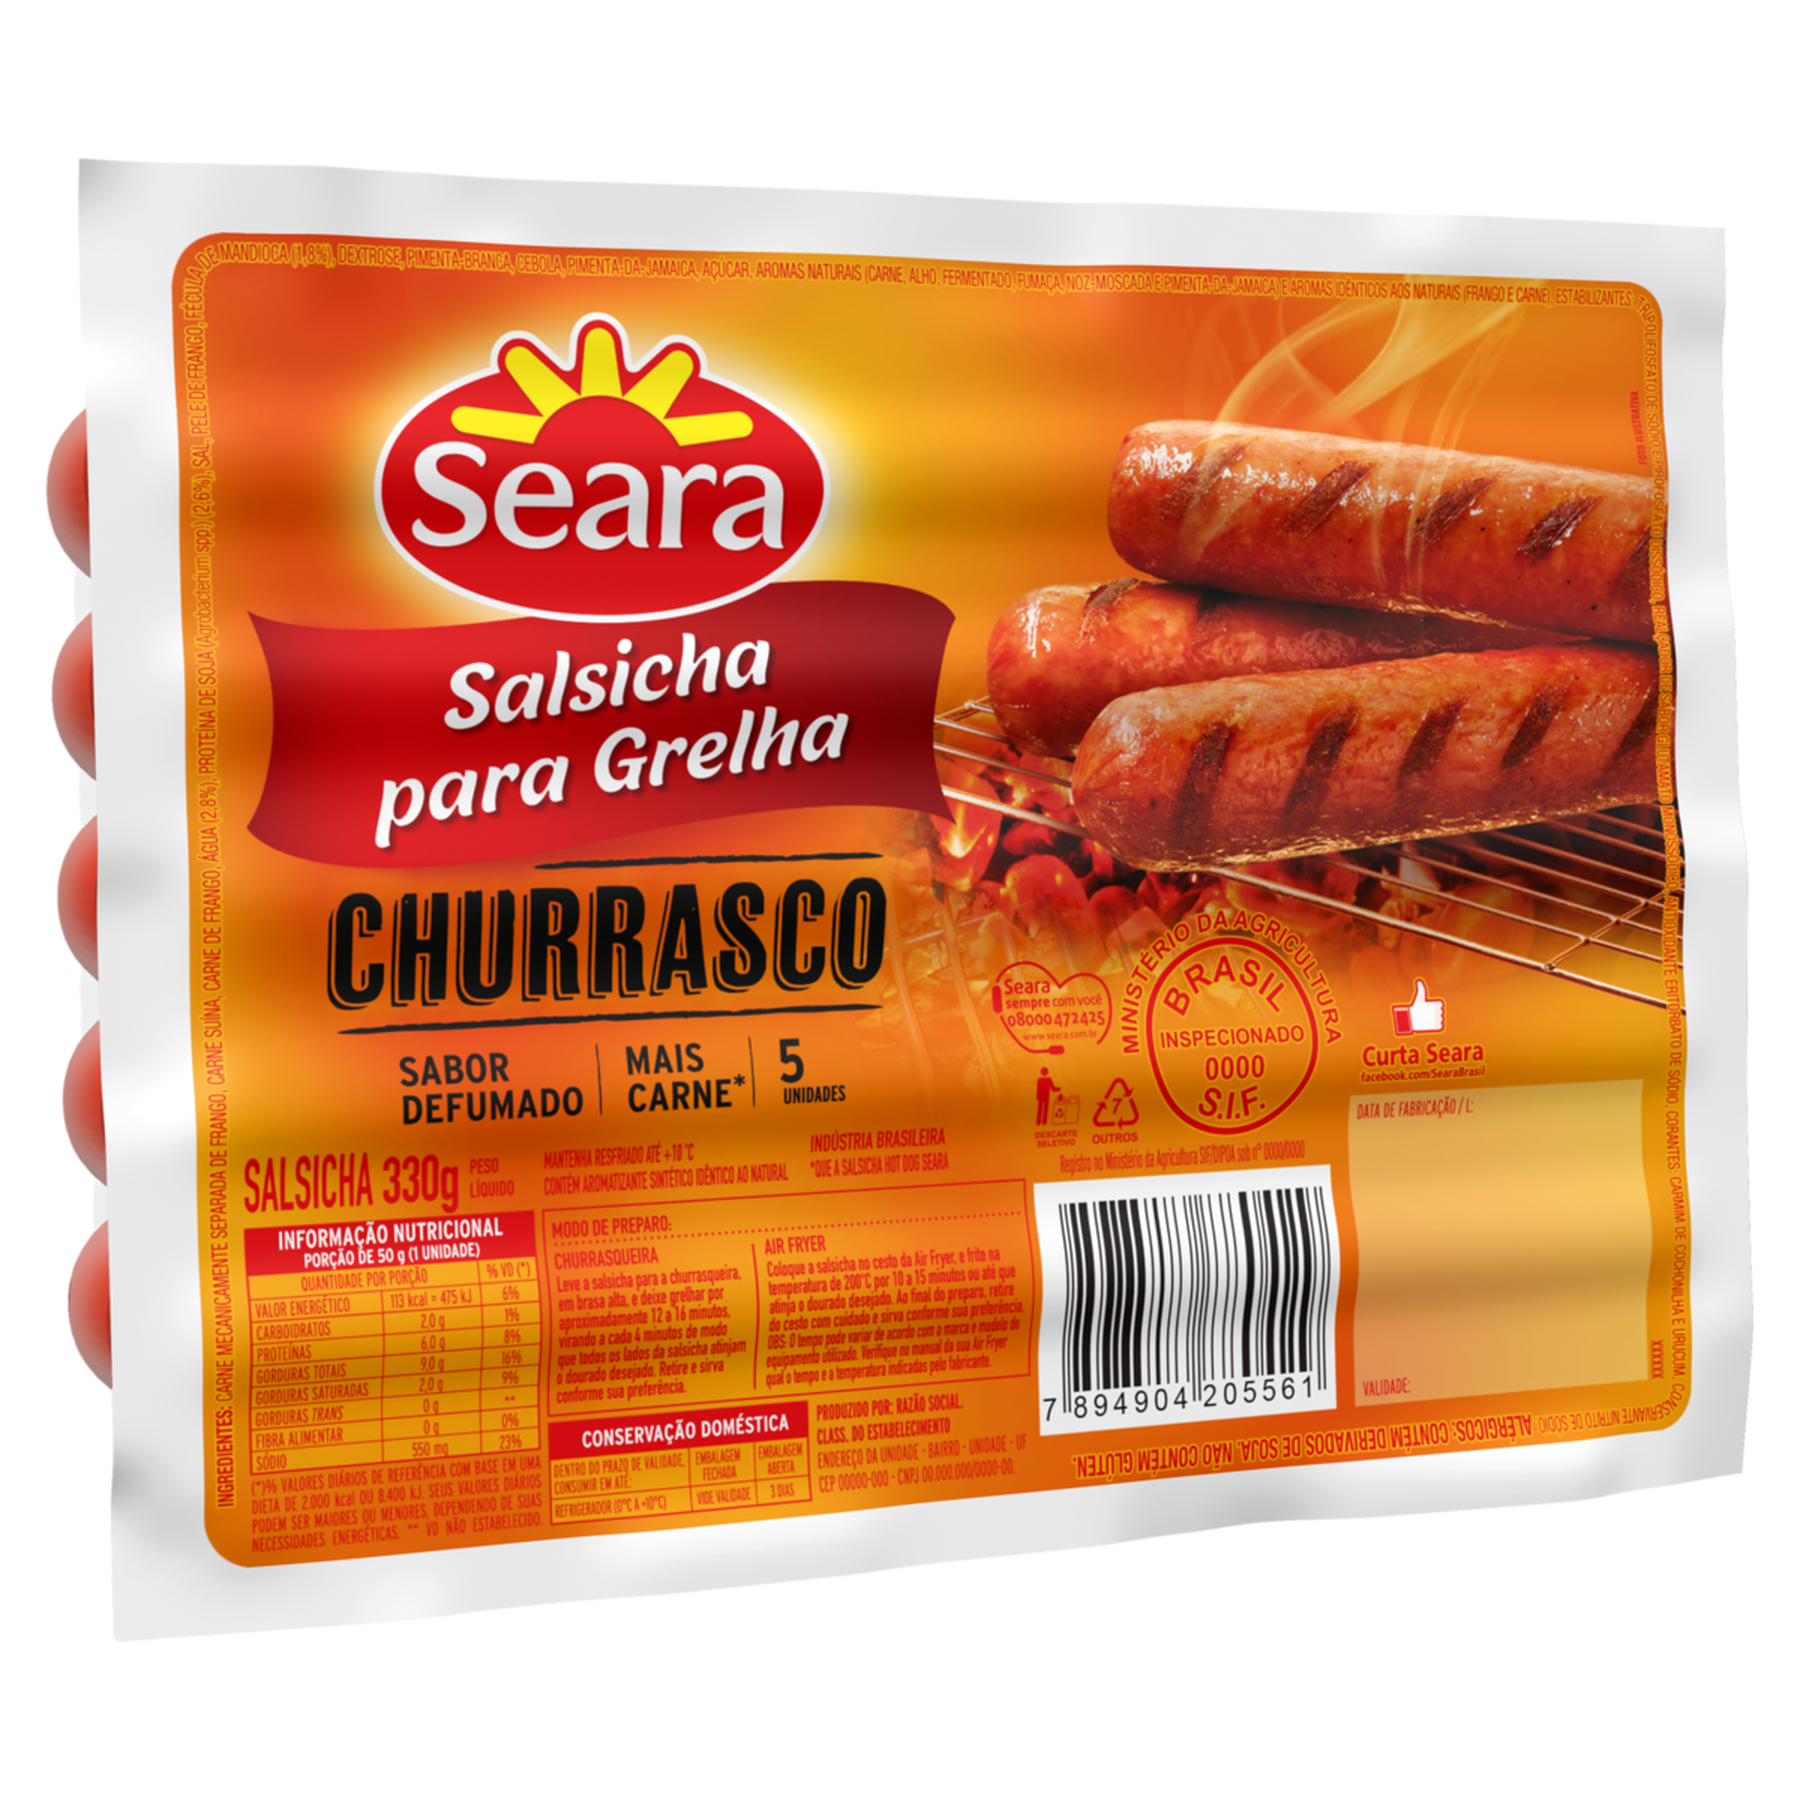 Salsicha para Grelha Churrasco Seara Pacote 330g C/5 Unidades